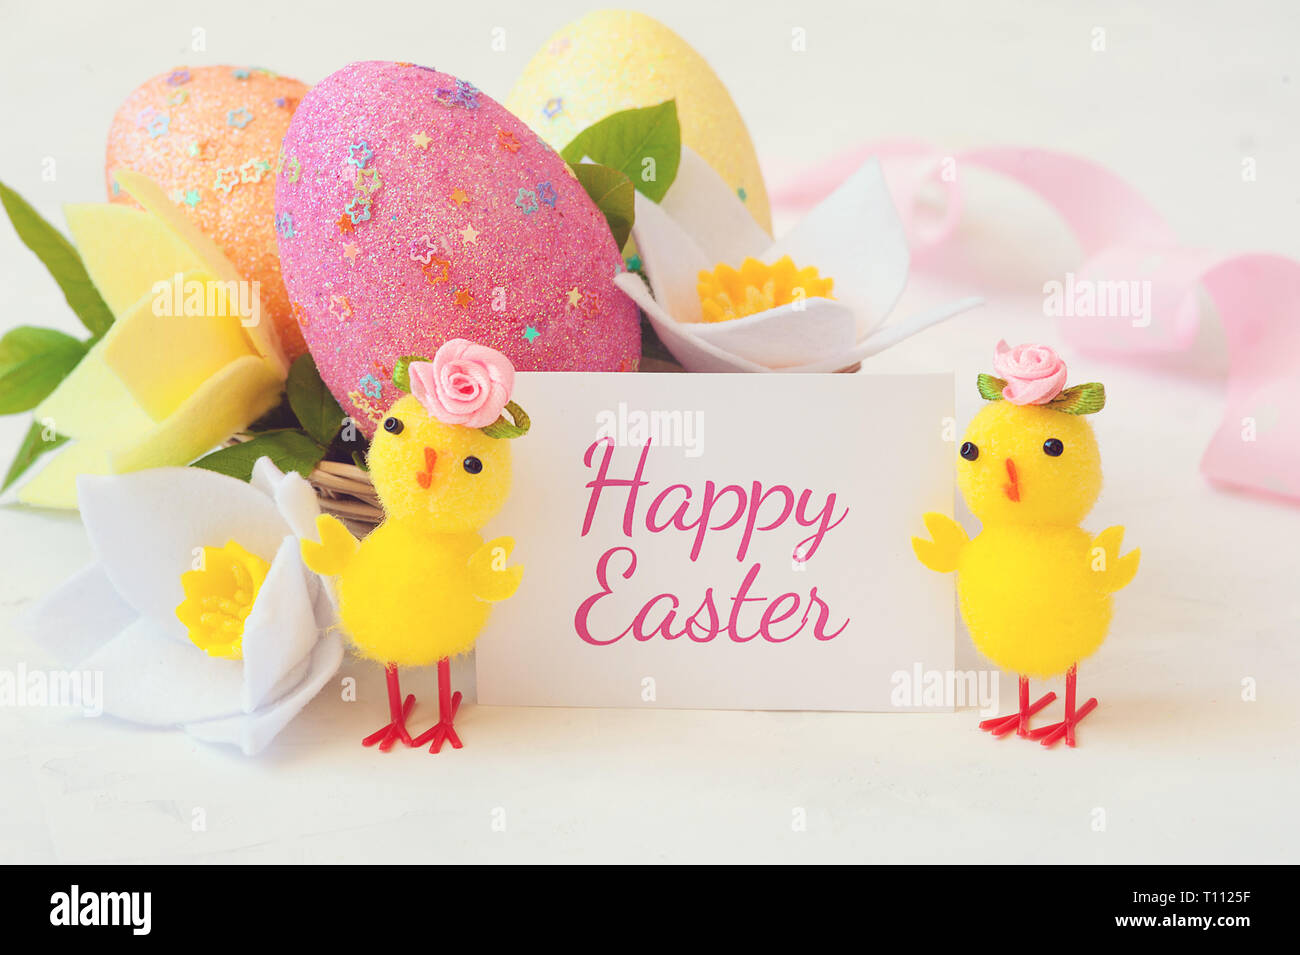 Dos poco amarillo pollo con una inscripción de felicitación - feliz Pascua. Foto de stock